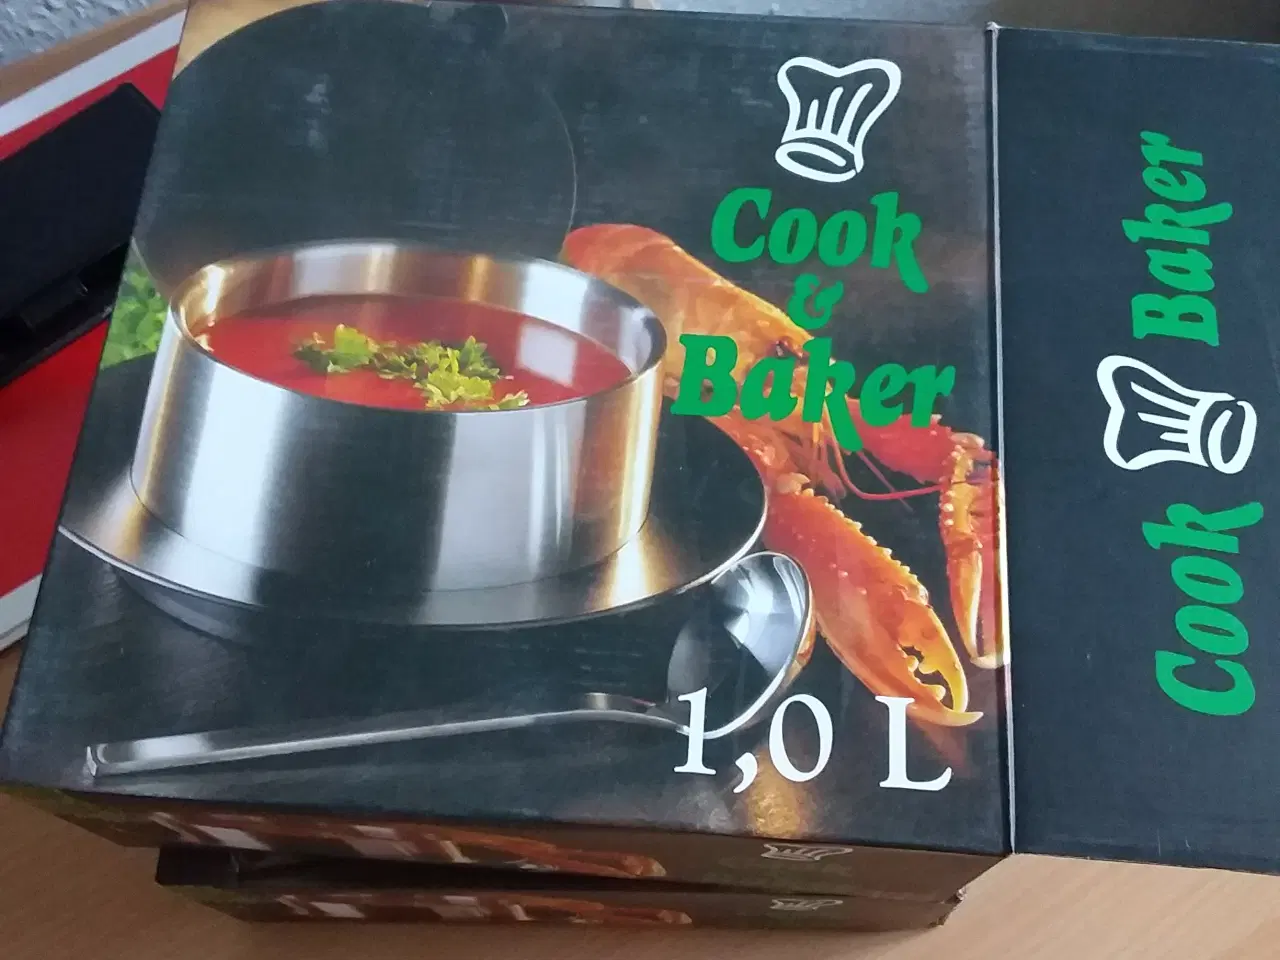 Billede 1 - 2 stk Termo skåle ( cook&baker) 1,0 l samlet pris 